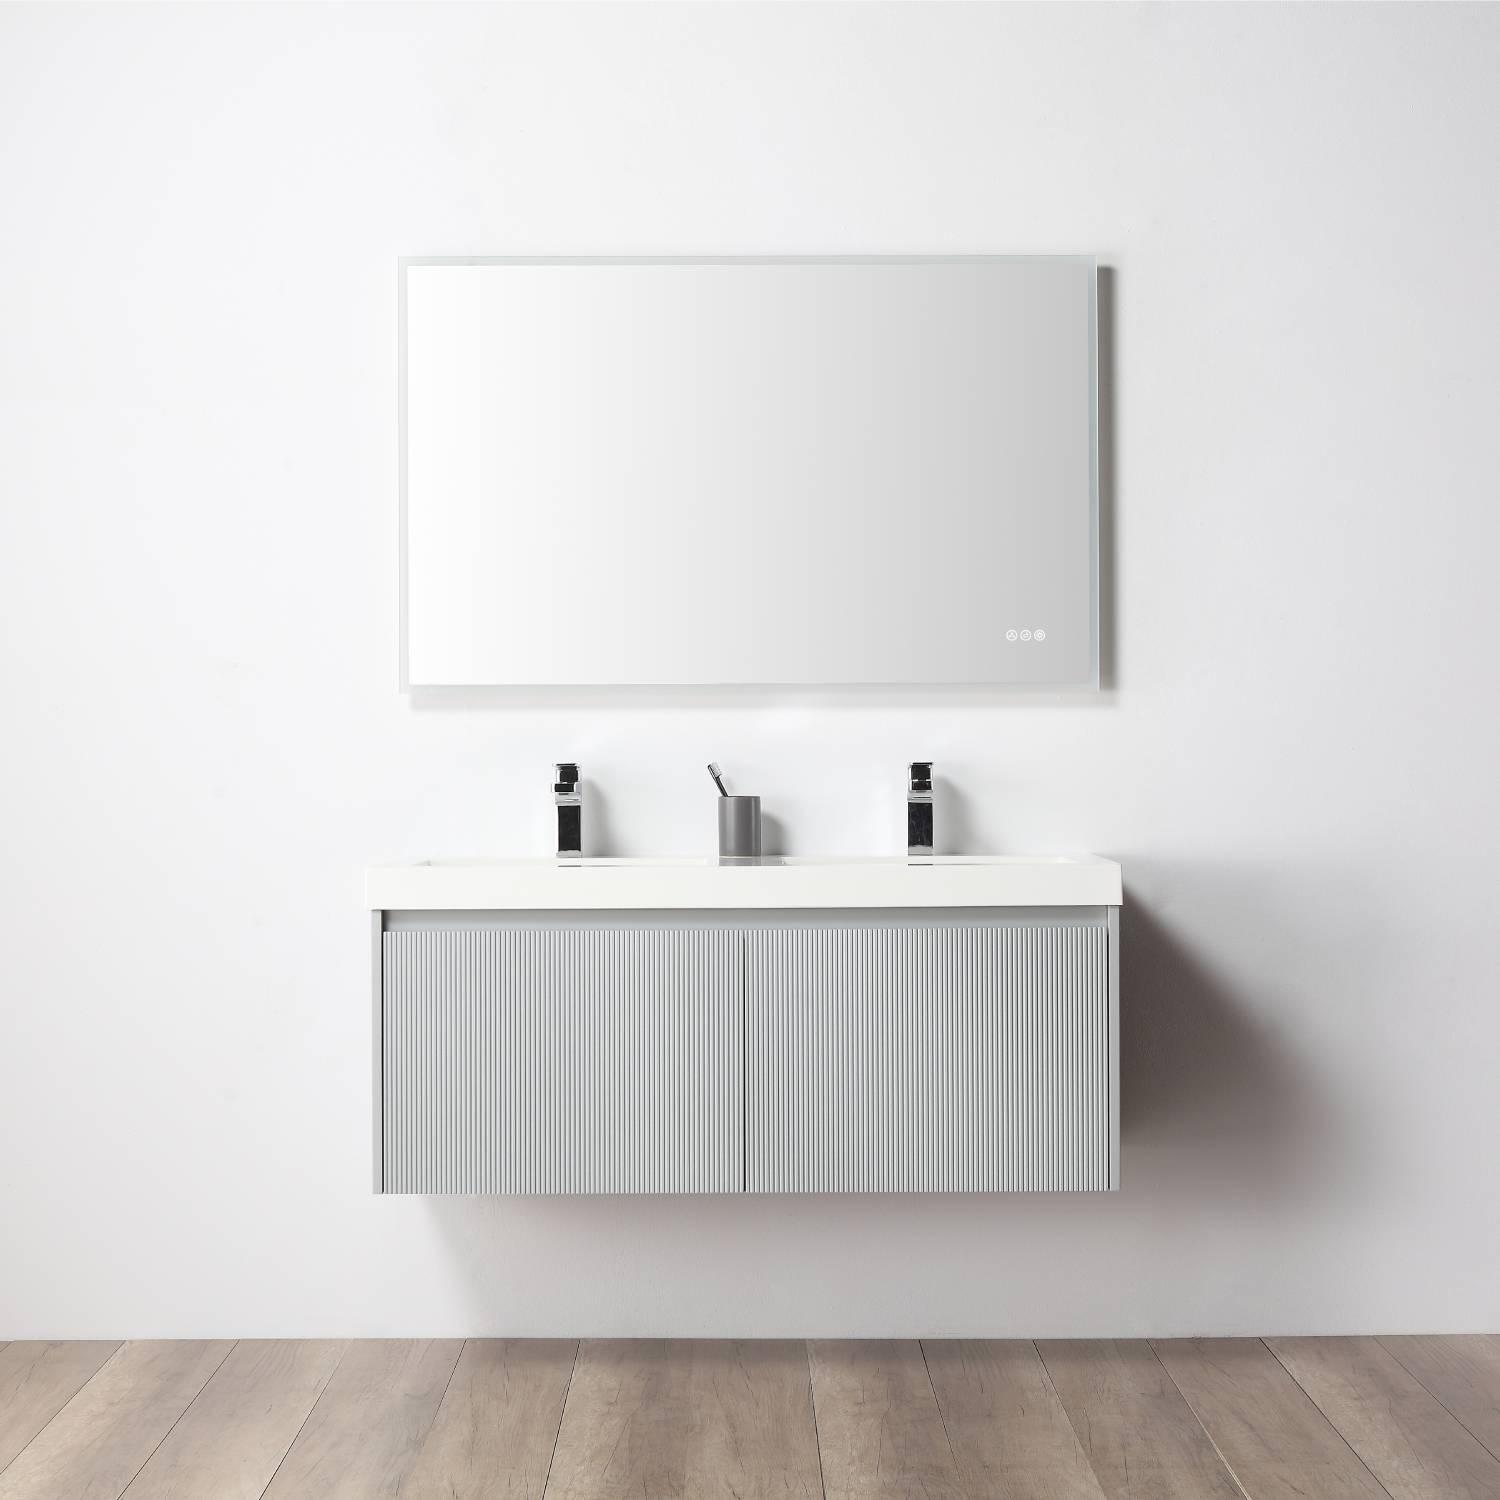 Positano 48" Luxury Double Bathroom Vanity with Acrylic Sink